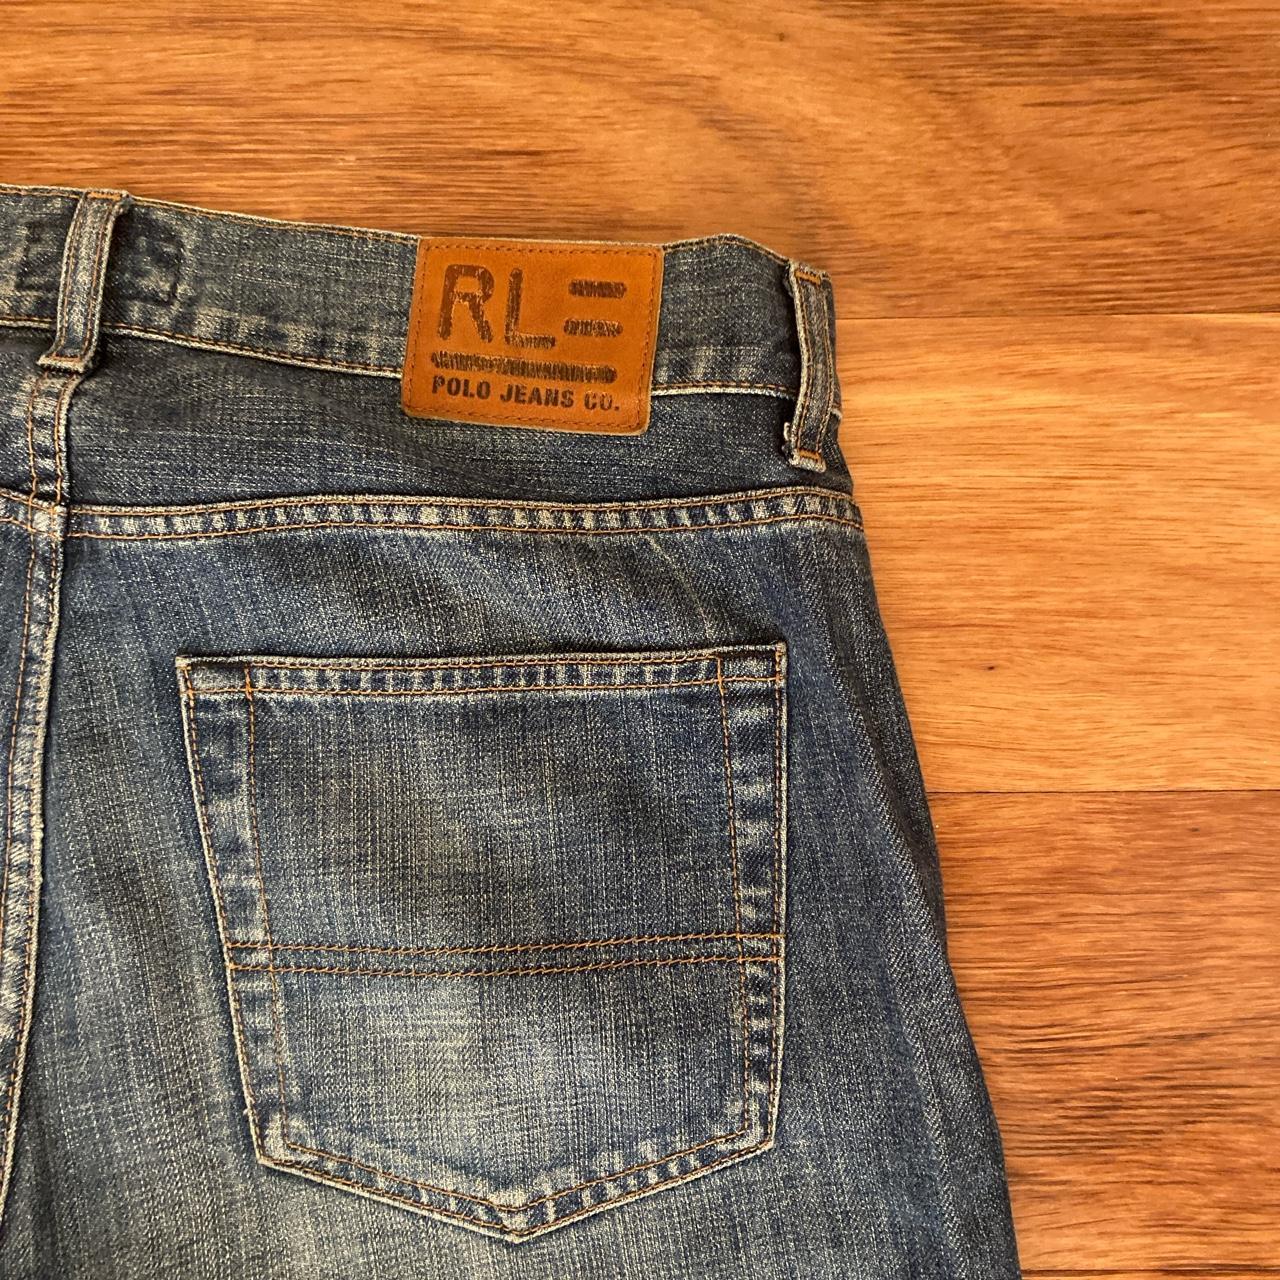 Ralph Lauren Polo Jeans good condition baggy fit - Depop